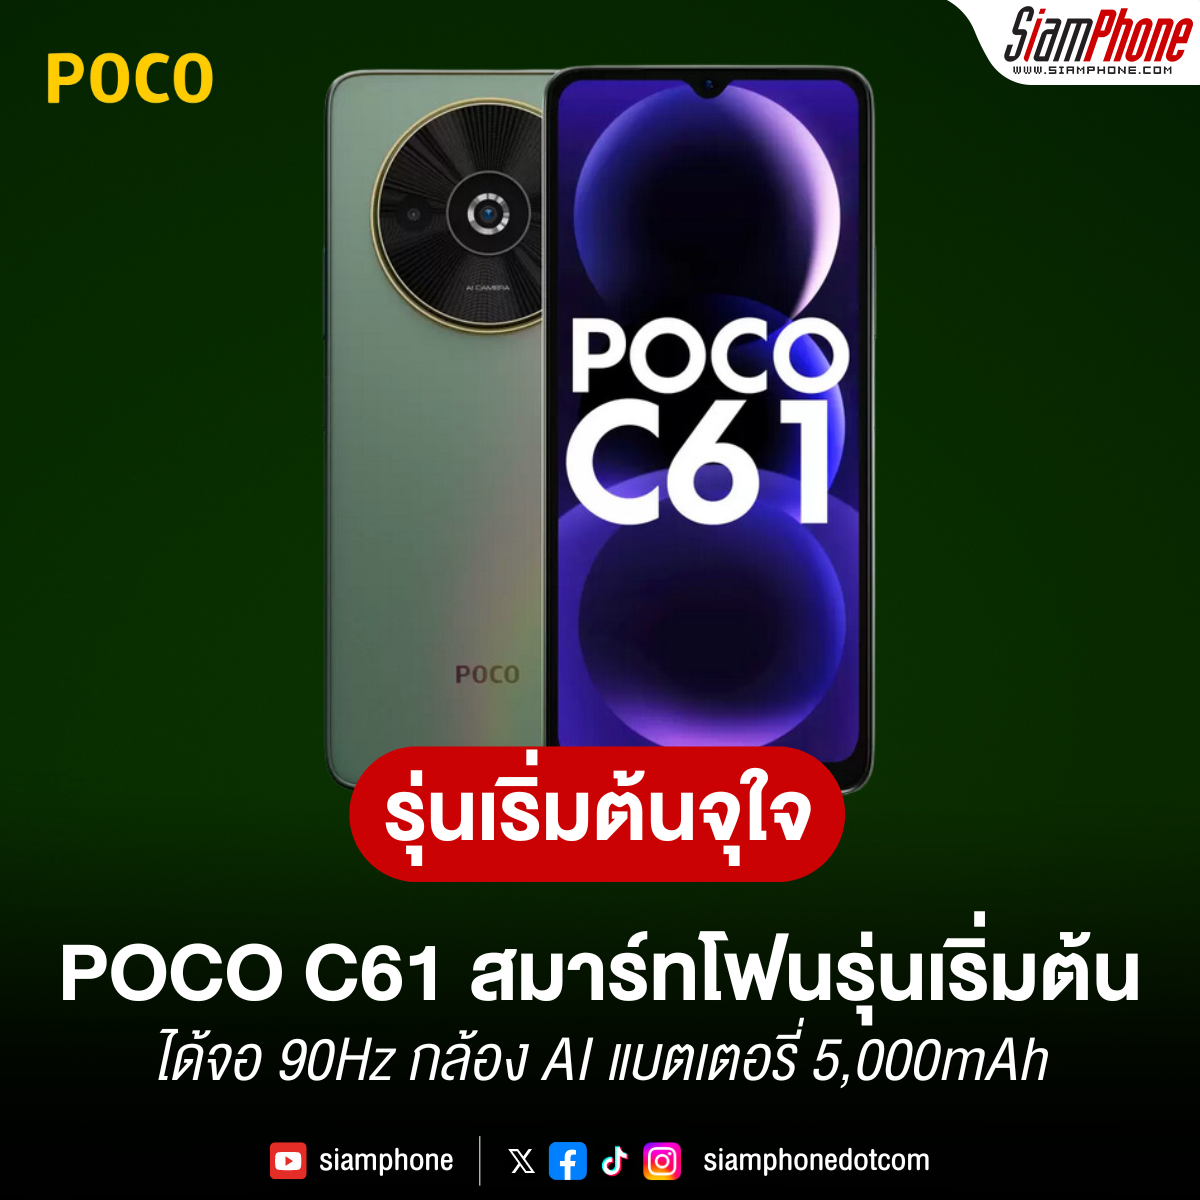 POCO C61 สมาร์ทโฟนรุ่นเริ่มต้น ได้จอ 90Hz กล้อง AI แบตเตอรี่ 5,000mAh